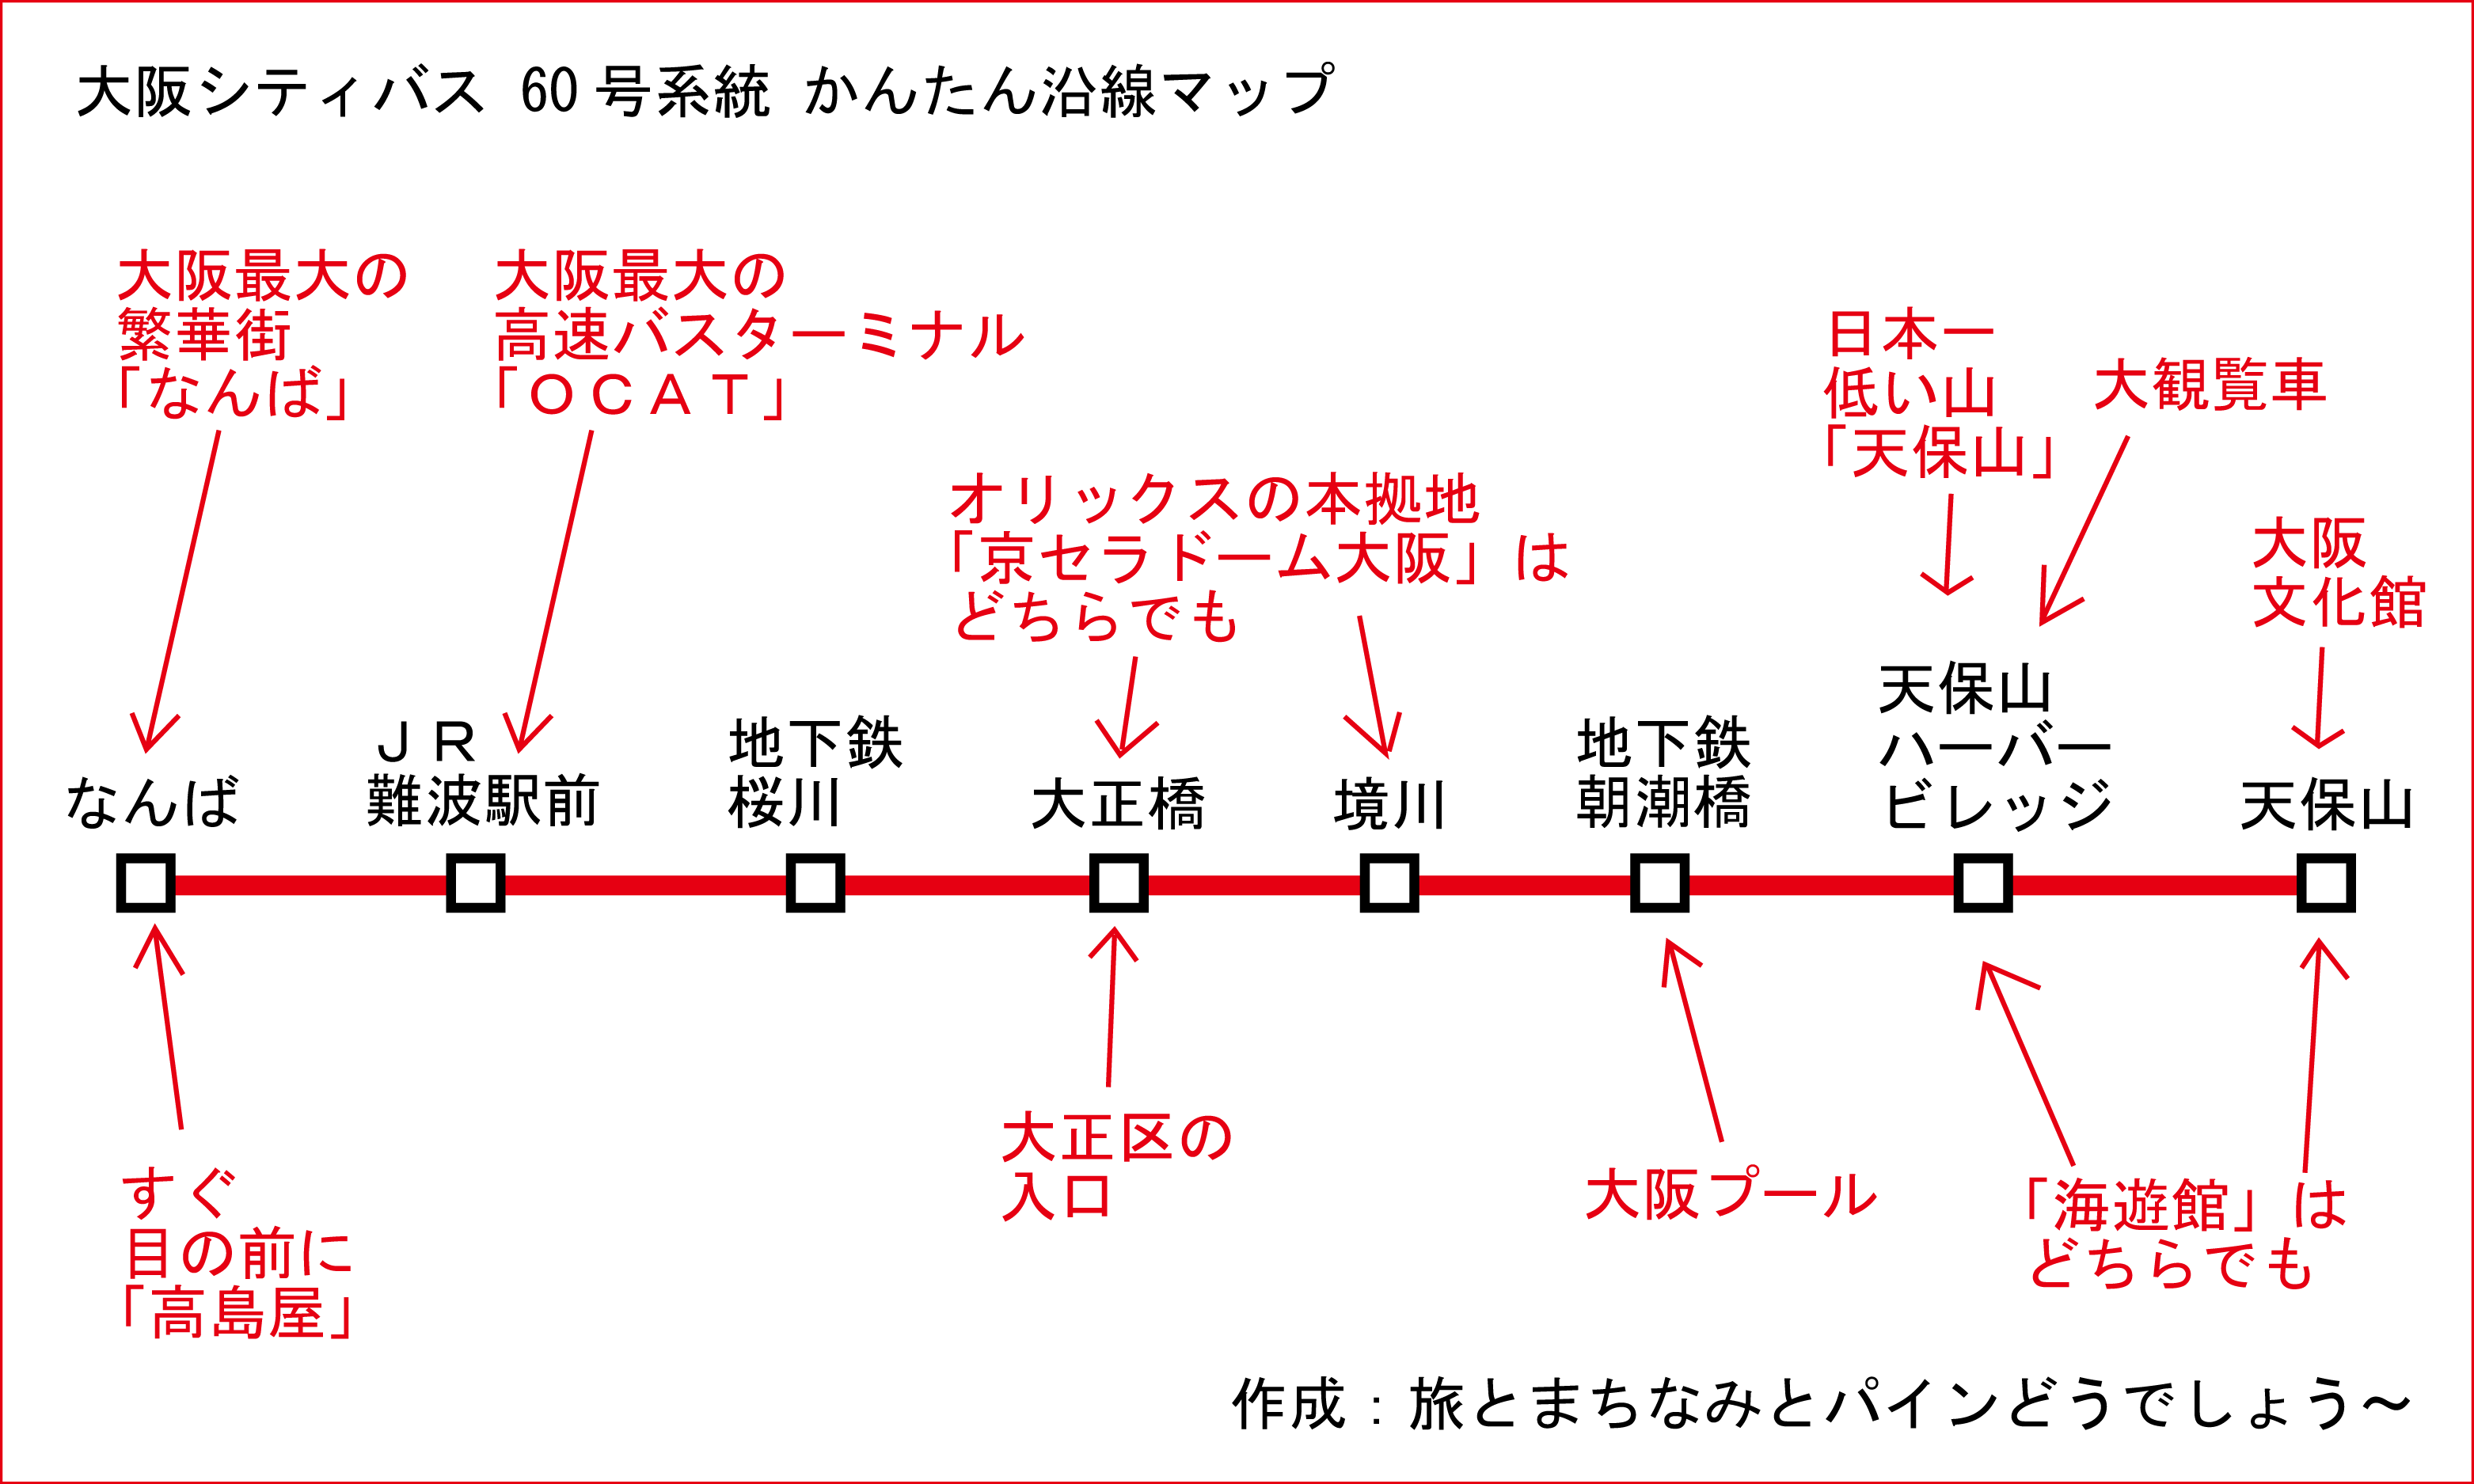 大阪 メトロ バス 路線 図 大阪シティバス バス時刻表やバス停検索 路線バス情報 Amp Petmd Com